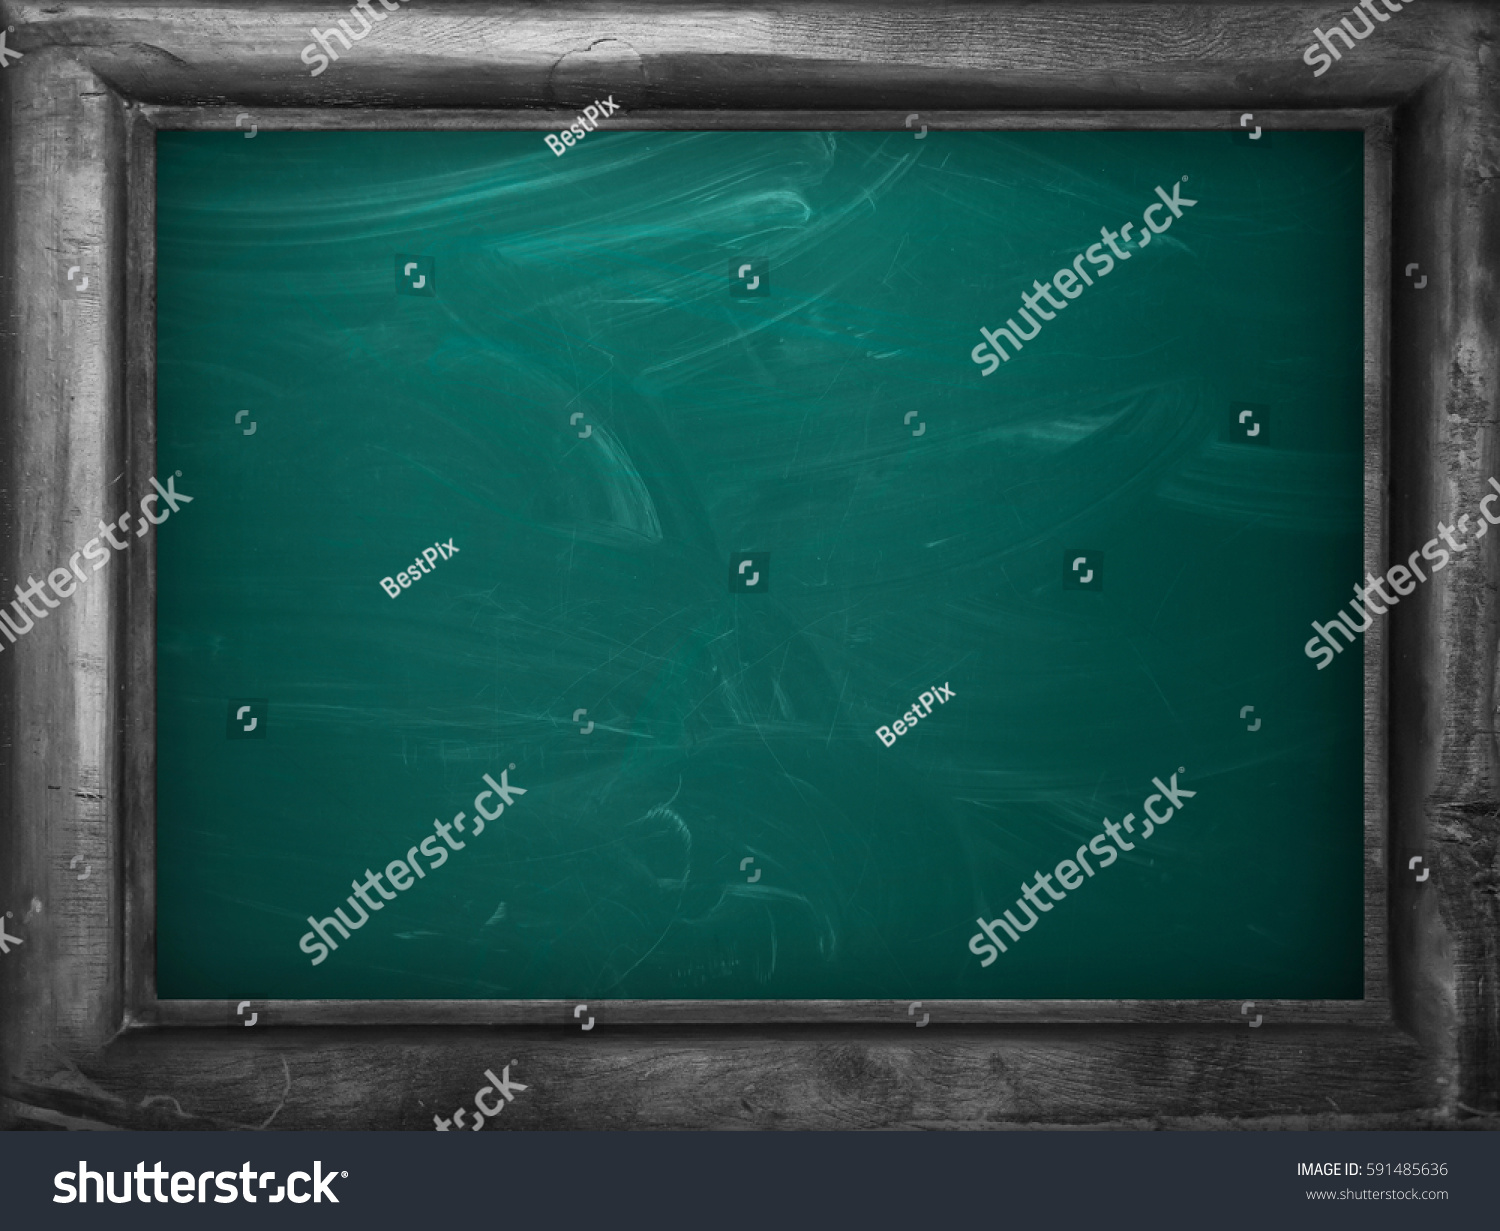 Blackboard / chalkboard texture. Empty blank green chalkboard with chalk traces #591485636